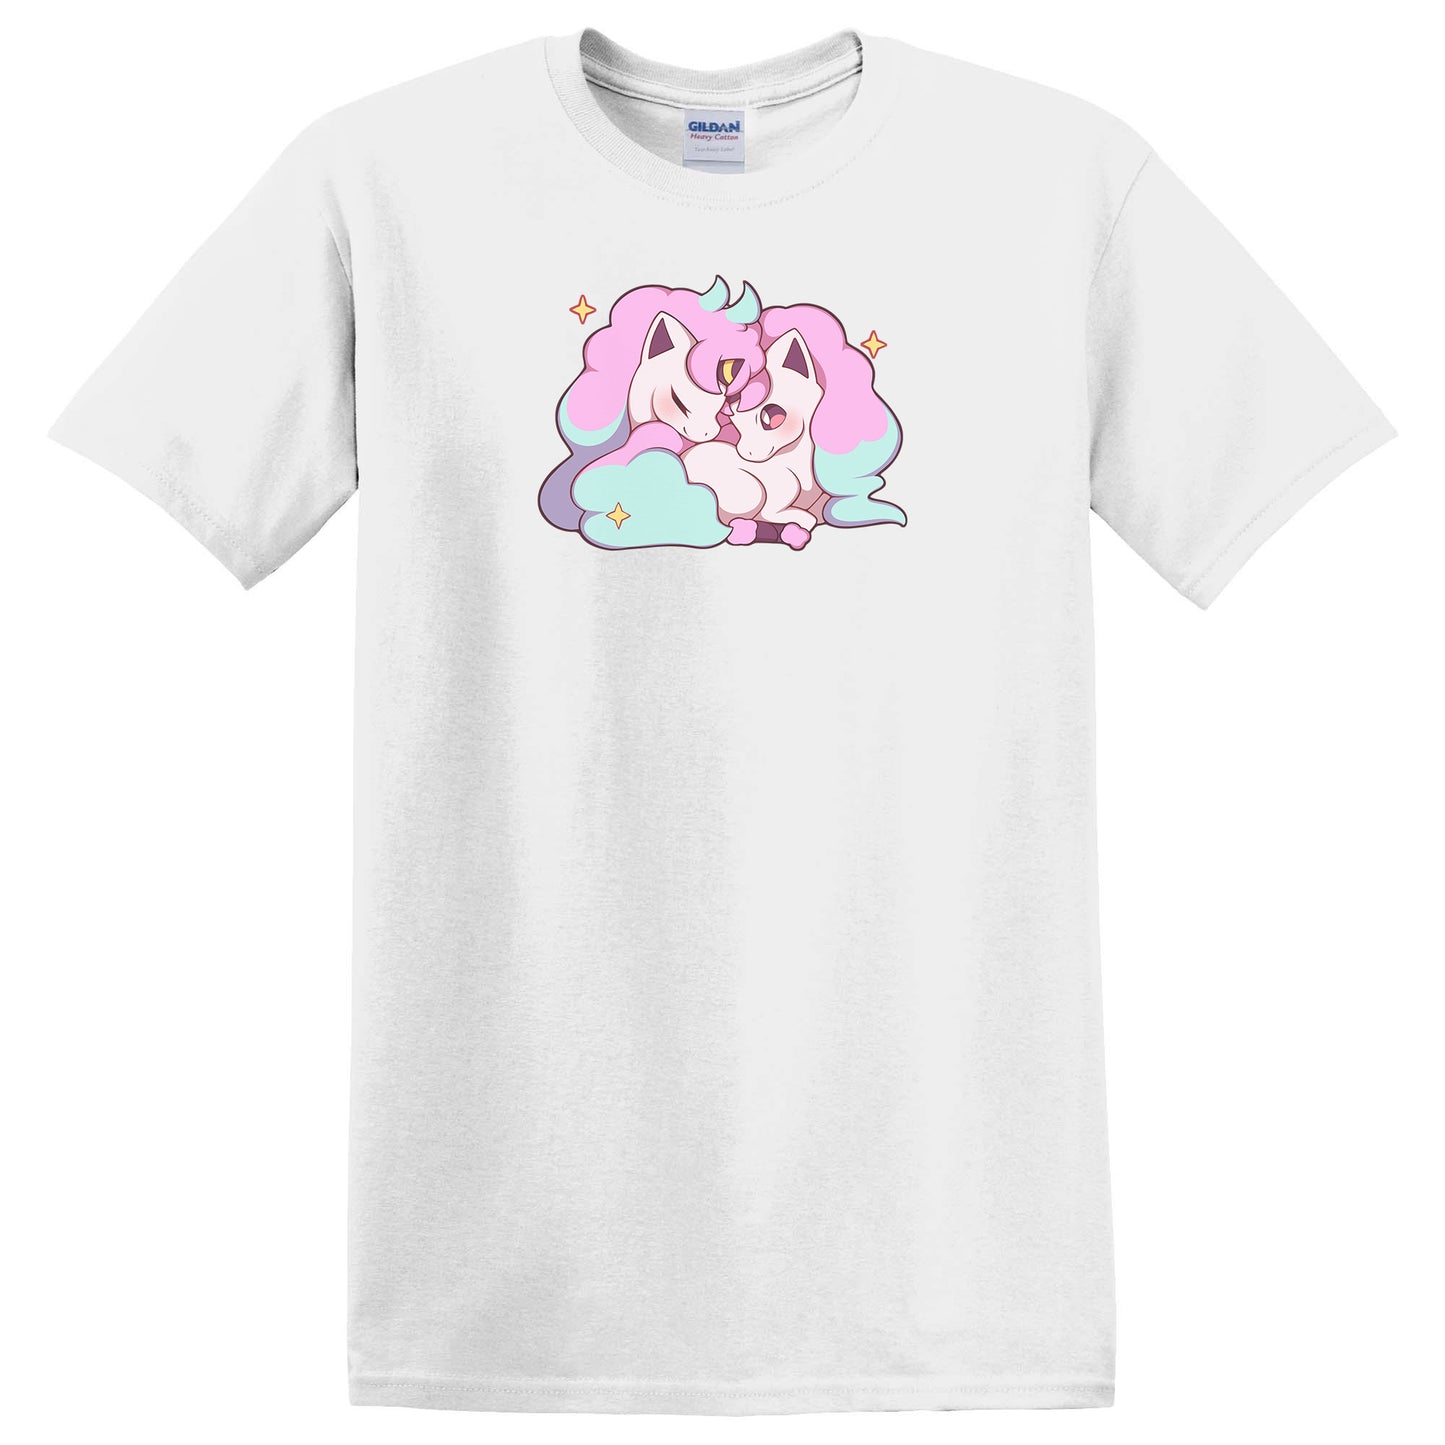 Galarian Ponyta T-Shirt